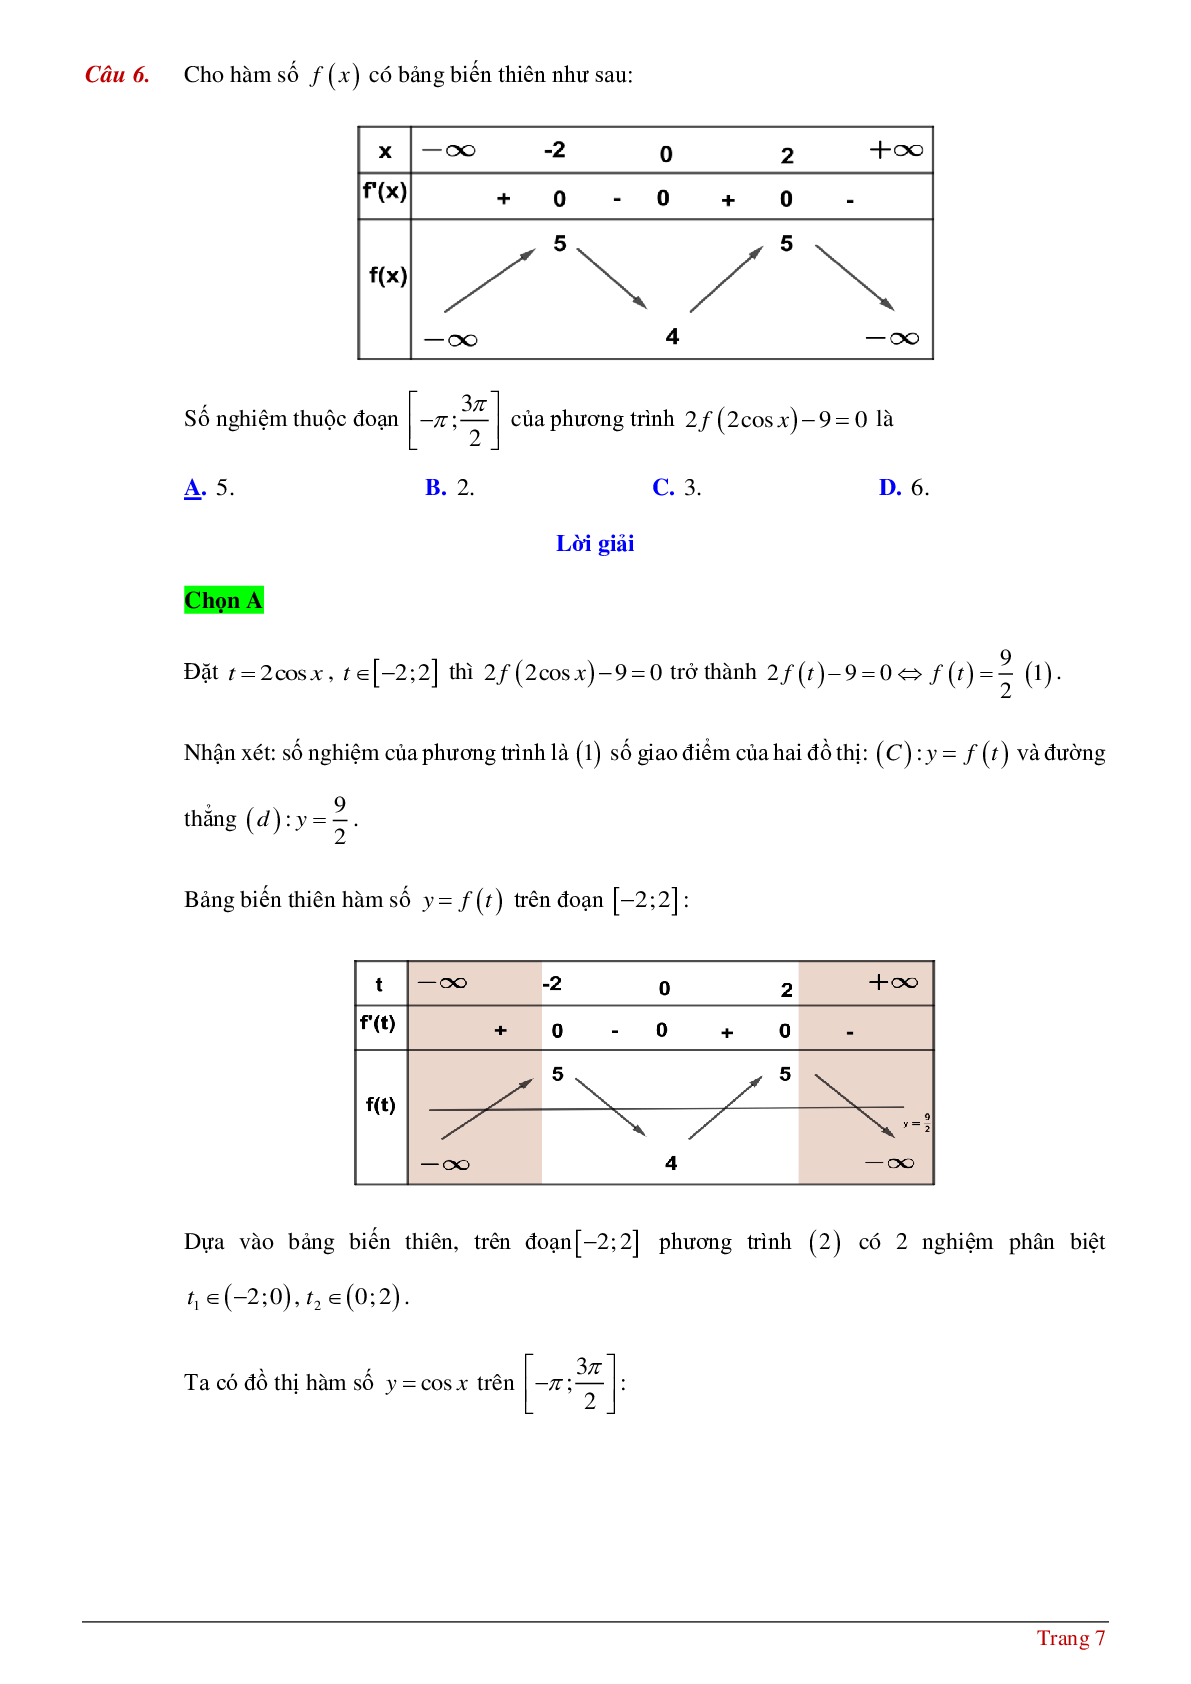 Tìm số nghiệm của phương tình hàm hợp khi biết bảng biến thiên hoặc đồ thị (trang 7)